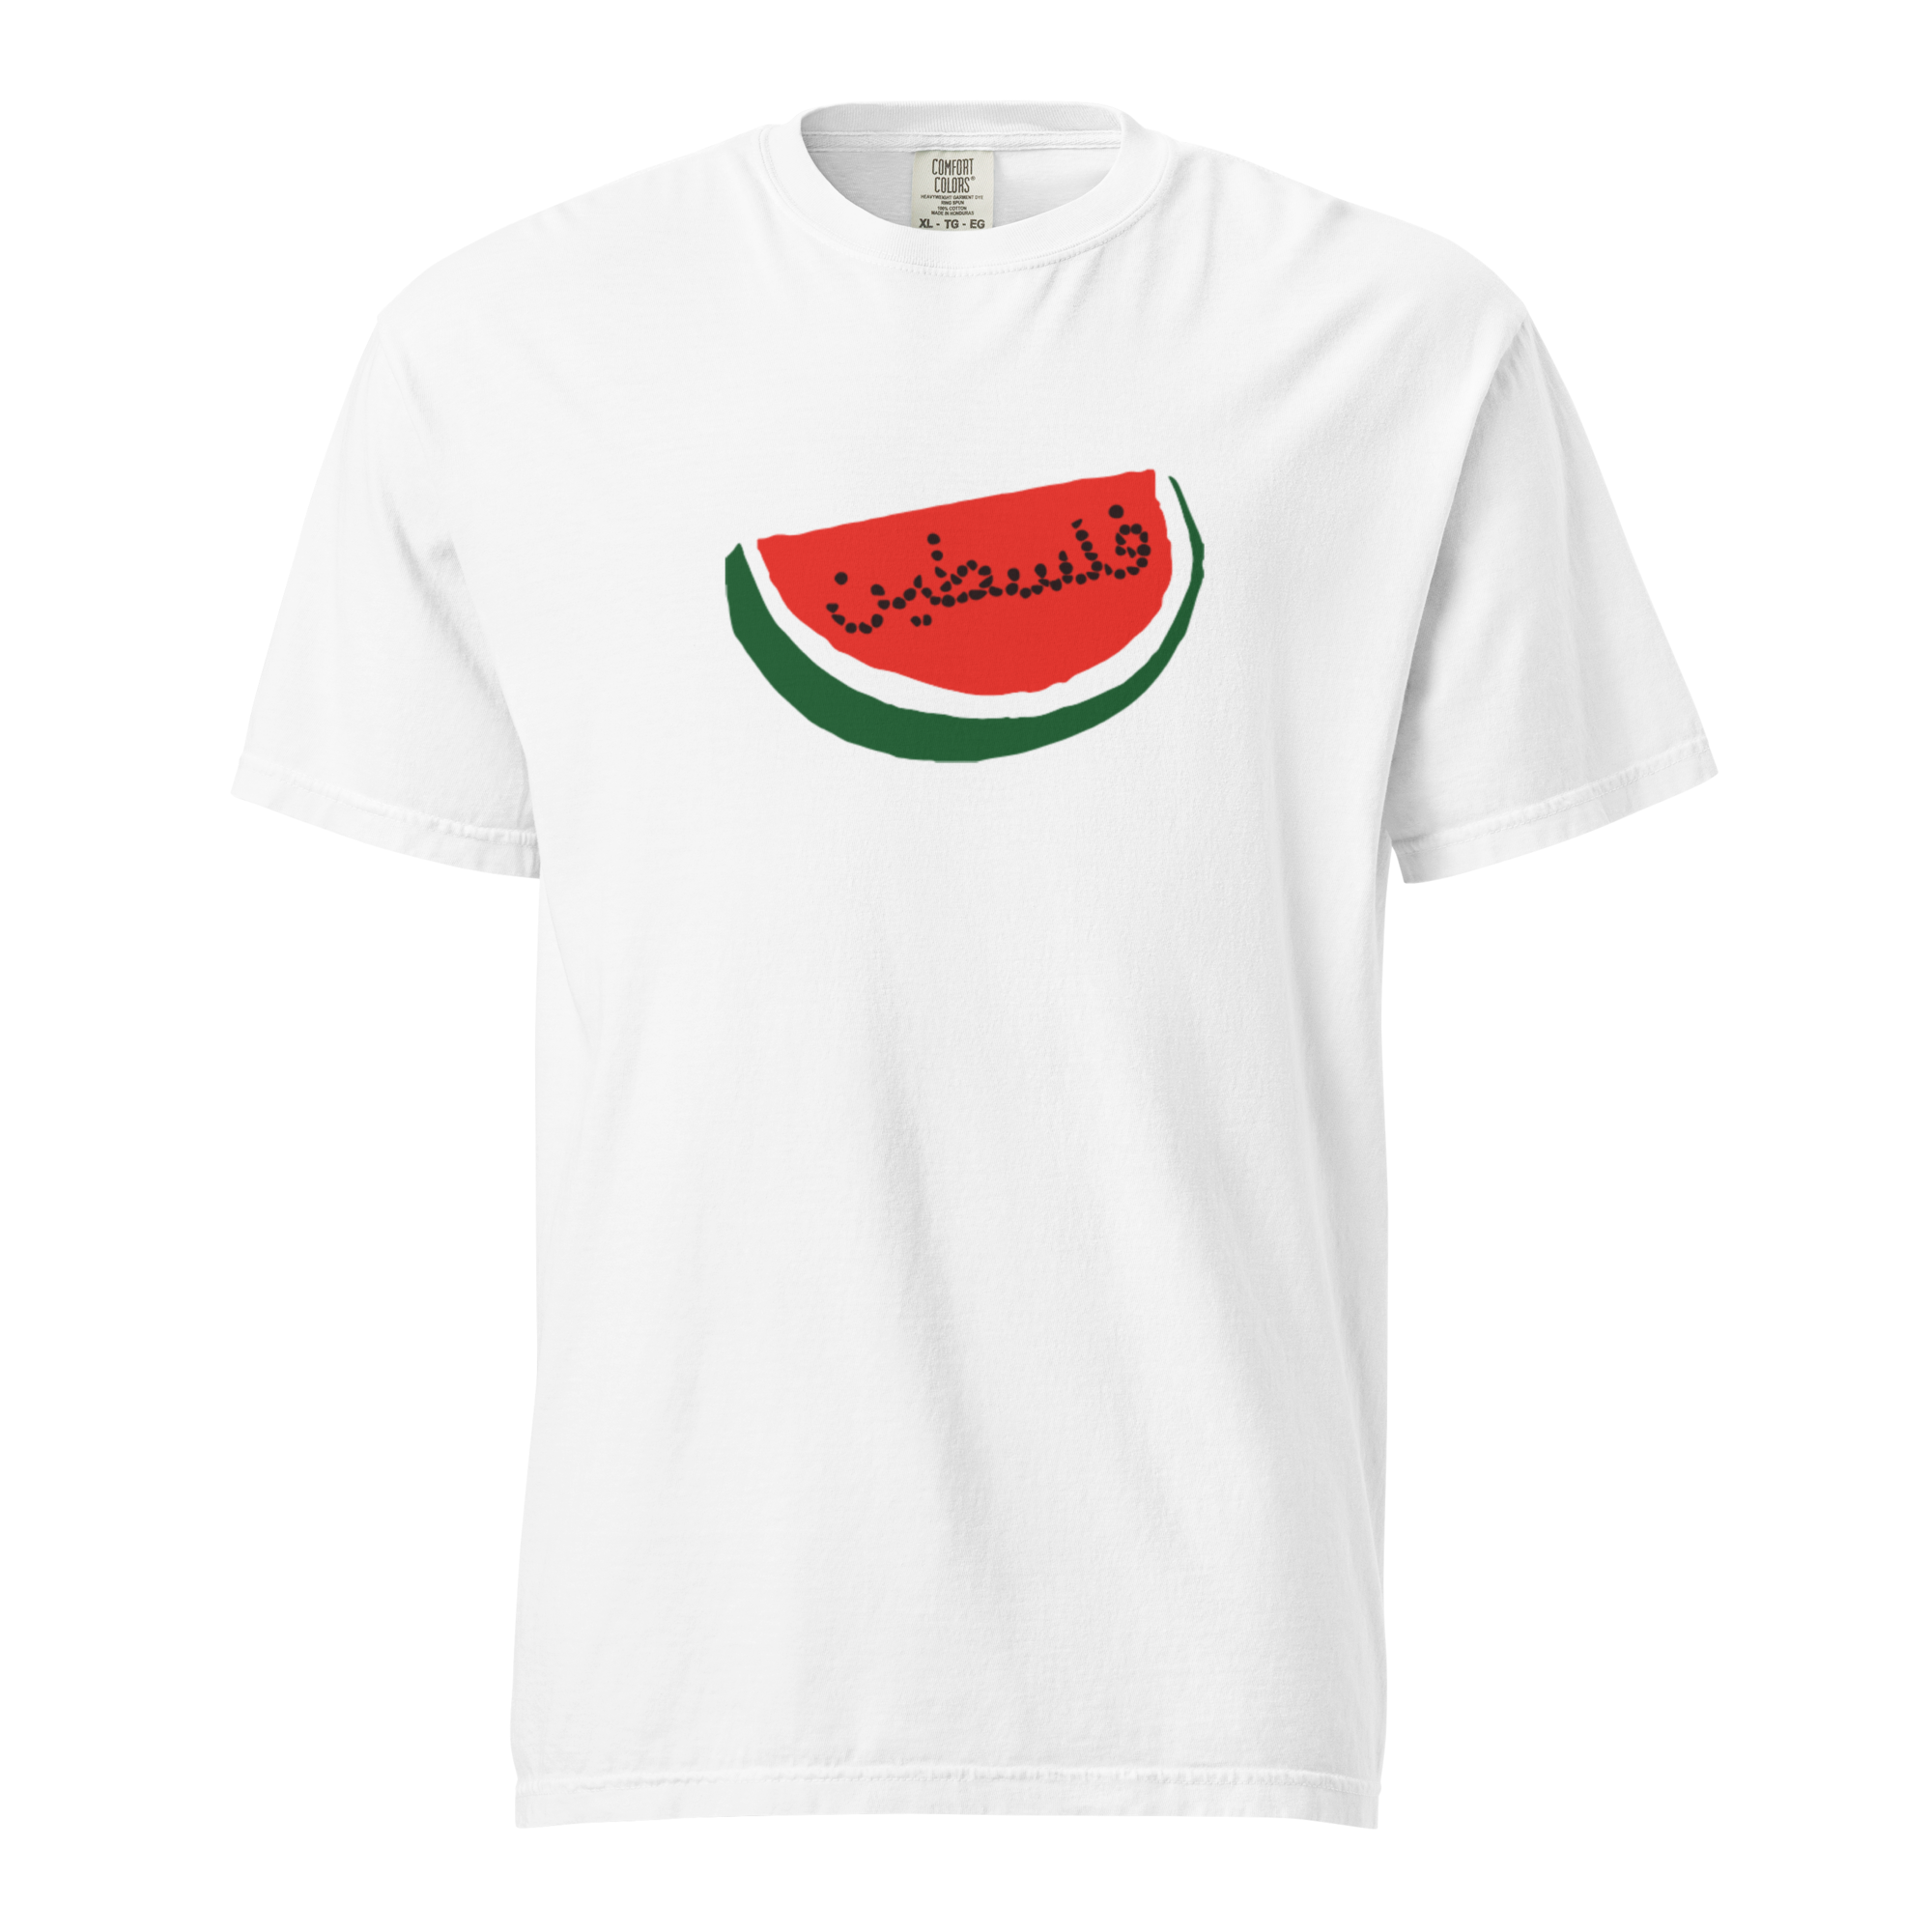 Palestine Watermelon Tee Fundraiser